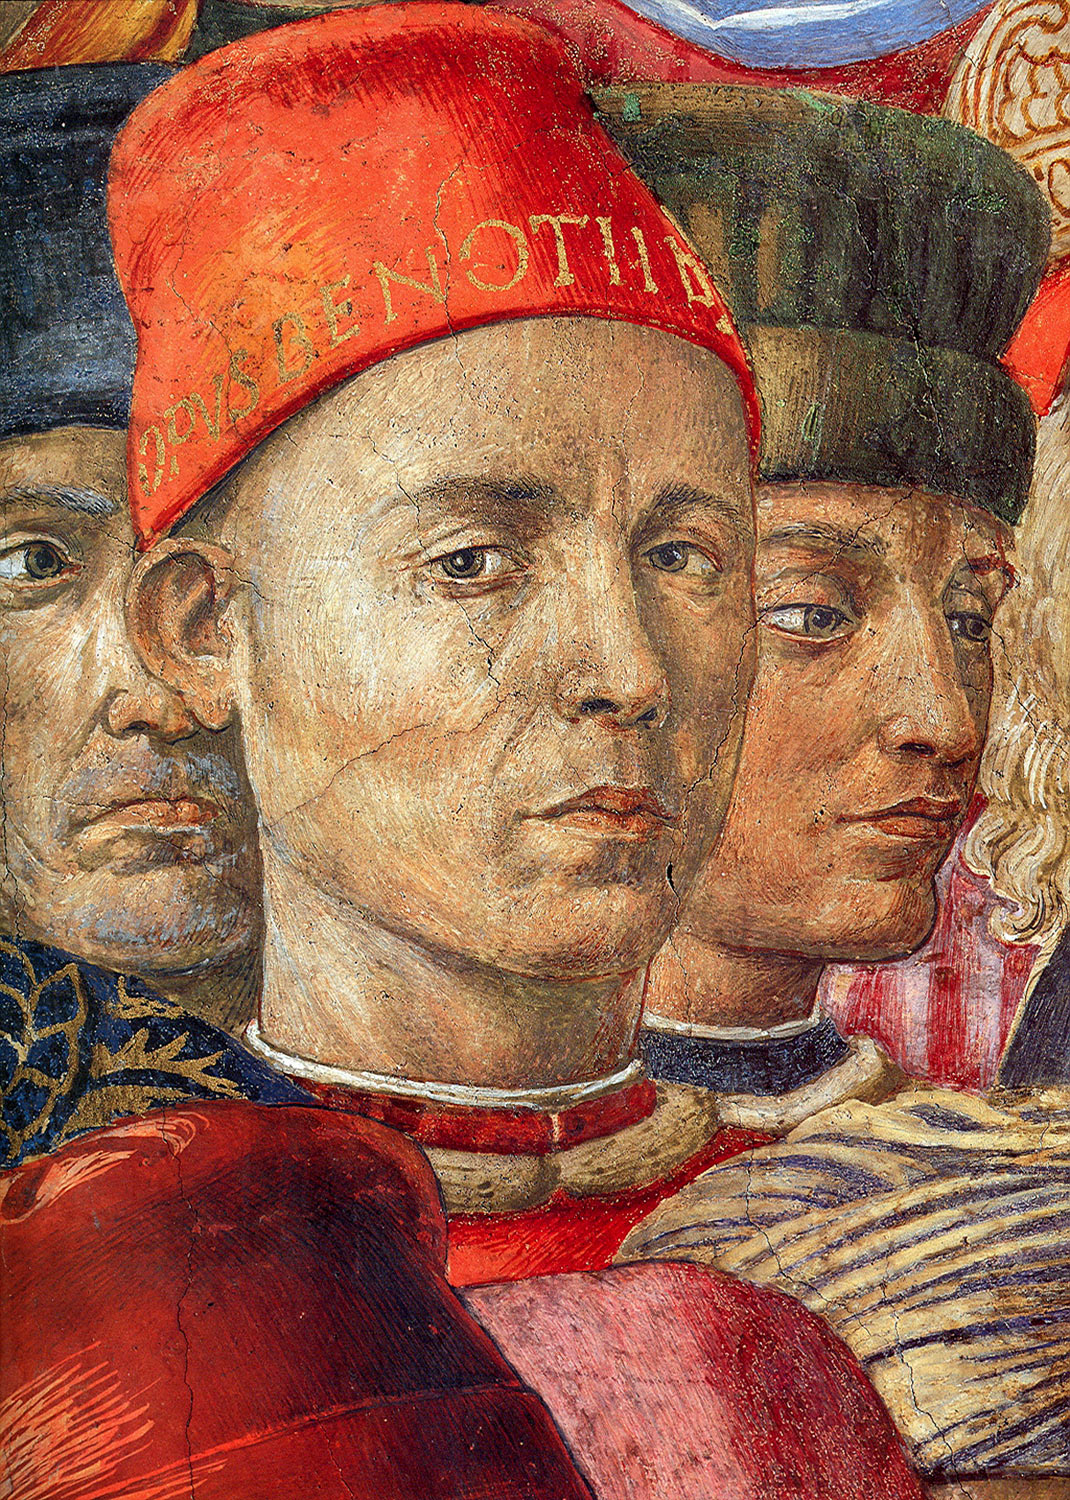 L'autoritratto di Benozzo Gozzoli negli affreschi della Cappella dei Magi (1459-1463)
